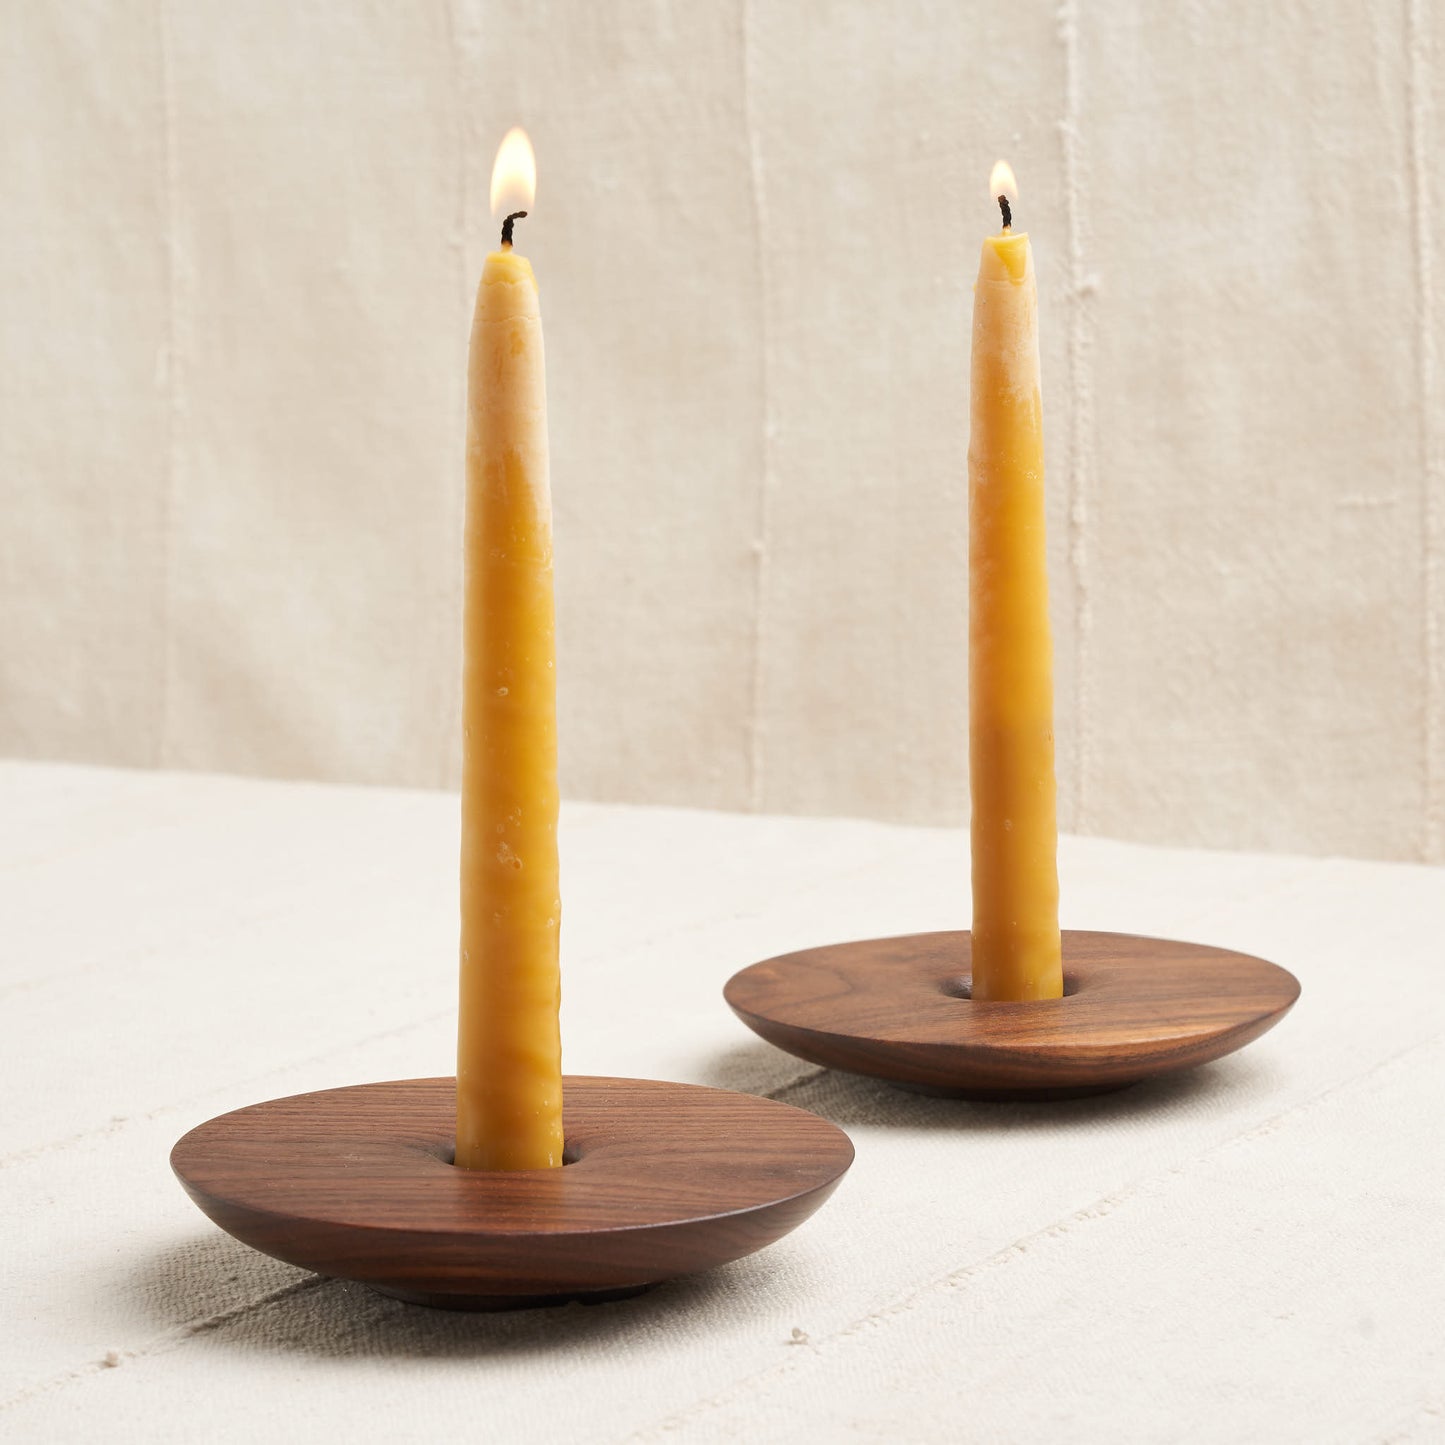 https://housework.store/cdn/shop/products/de-jong-co-walnut-wood-candlestick-holders-1.jpg?v=1617395850&width=1445